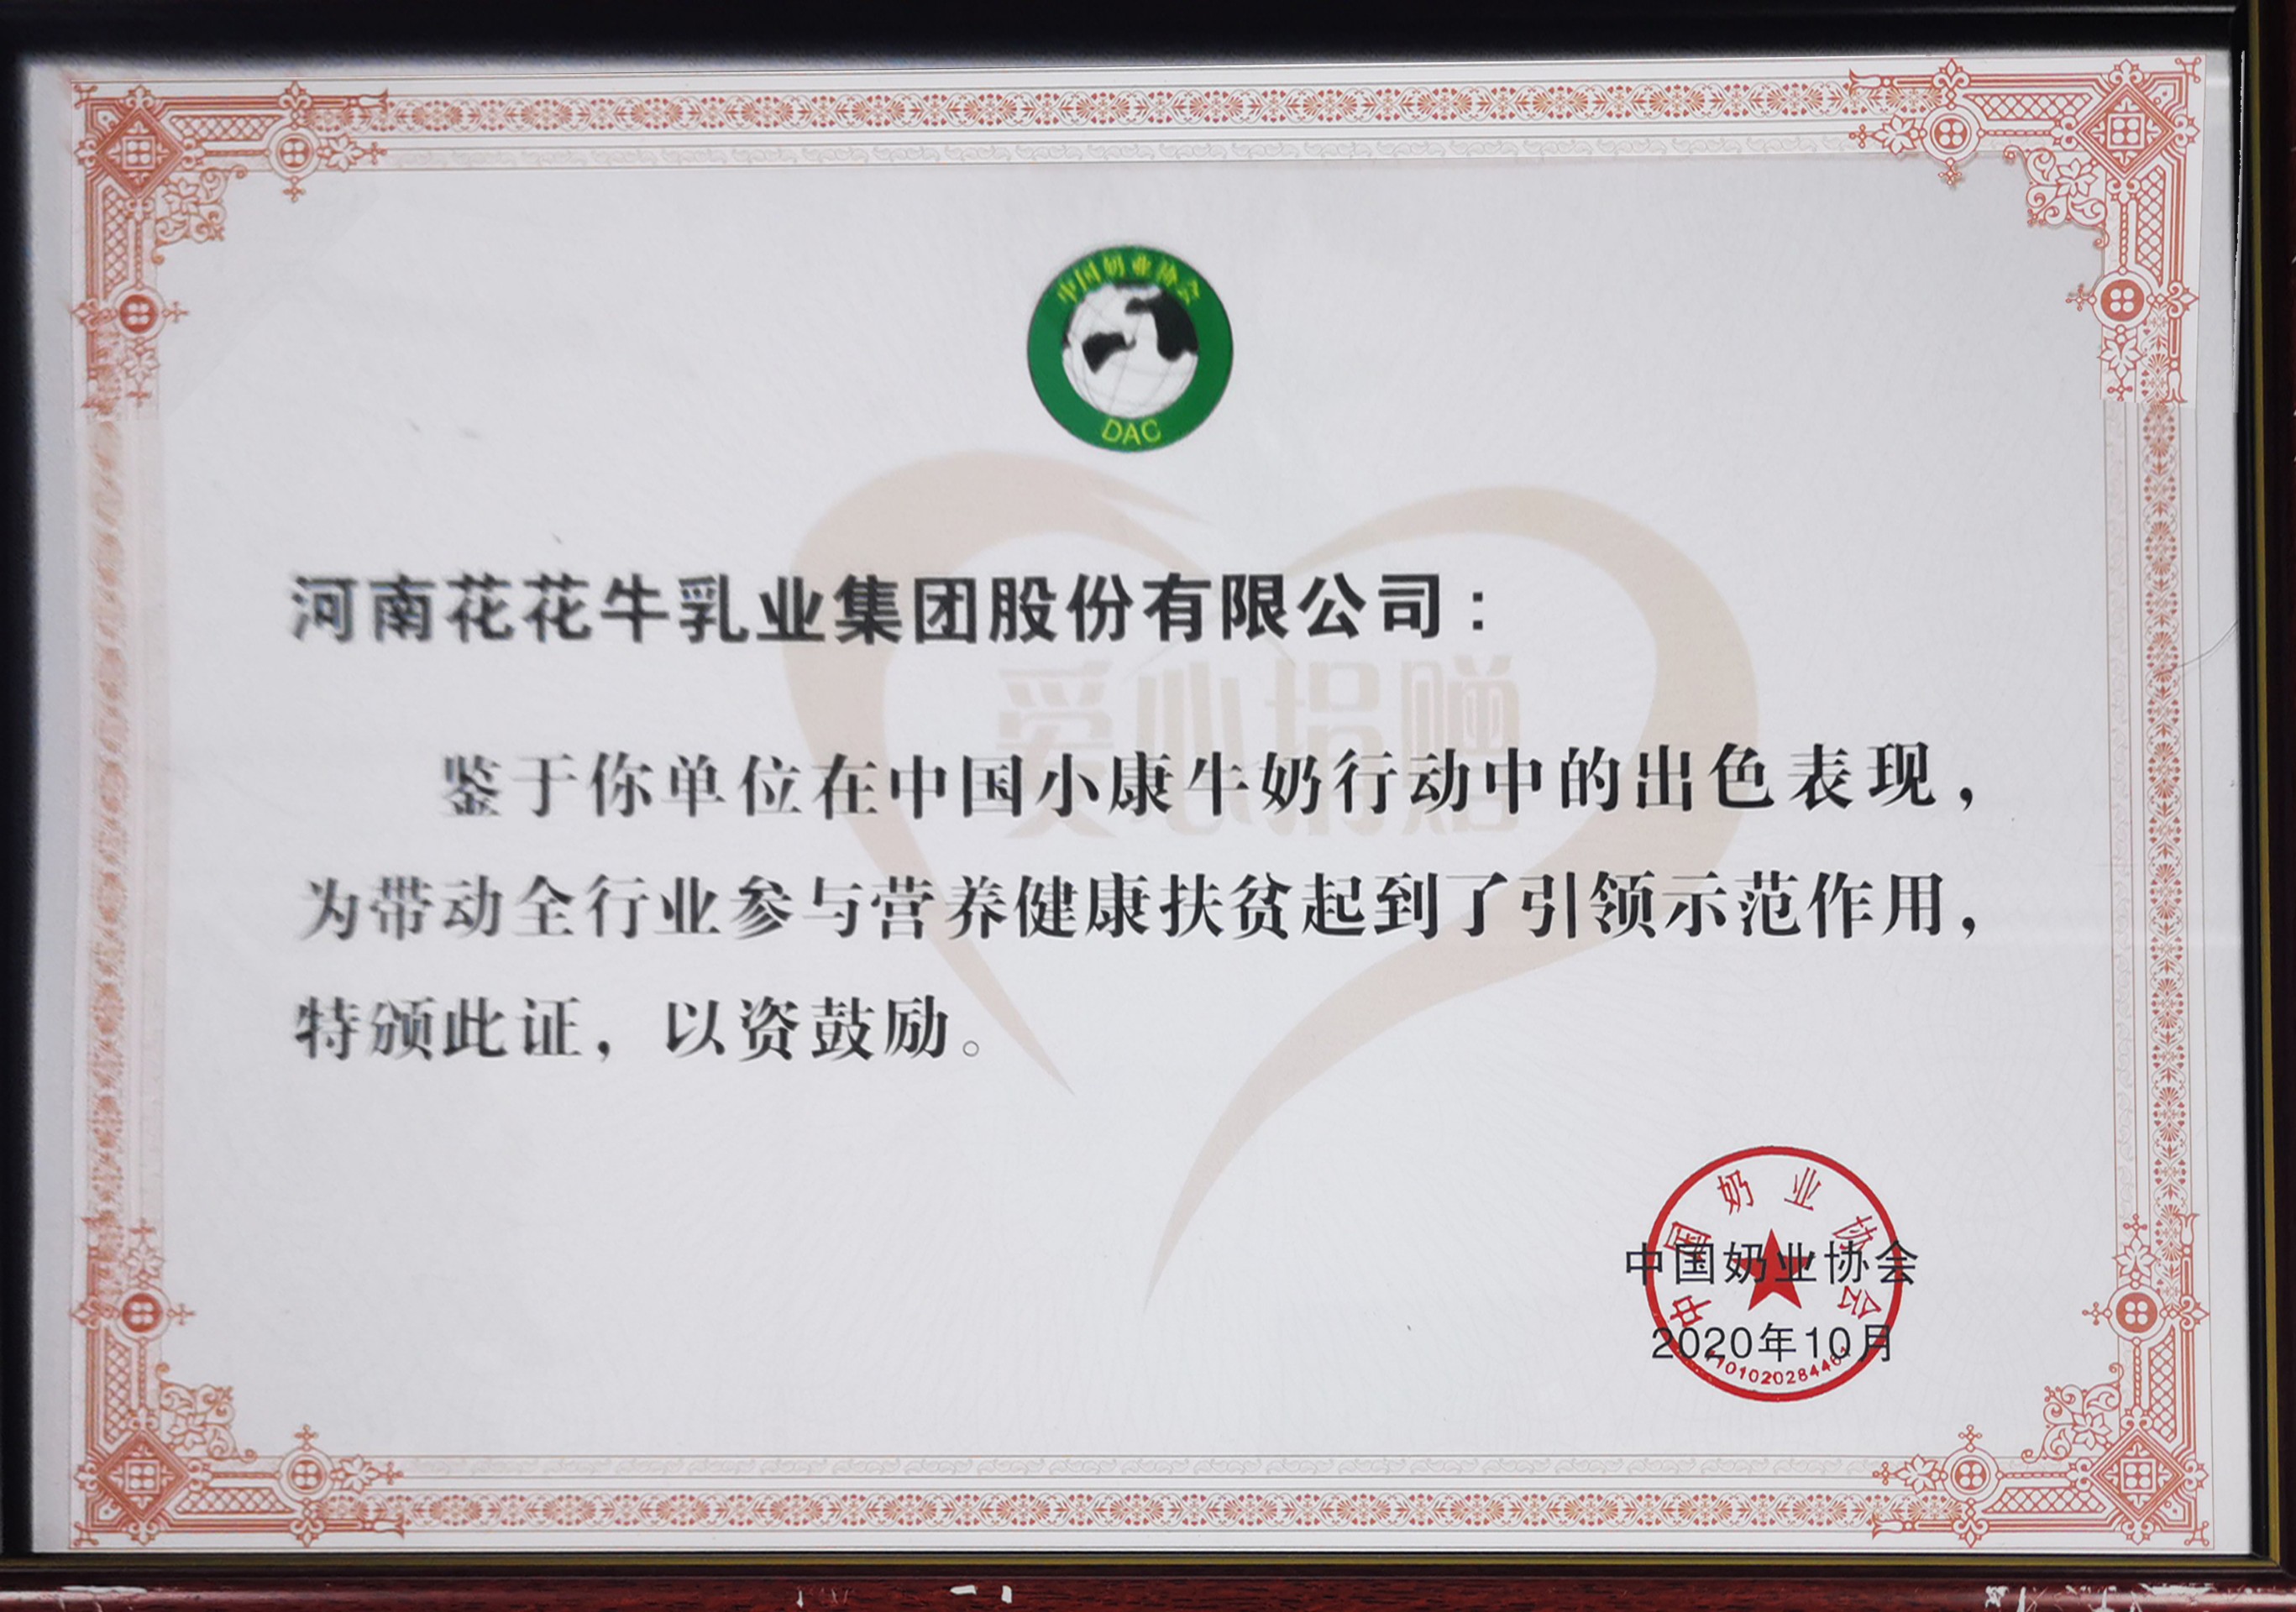 中國小康牛奶行動 · 愛心捐贈企業